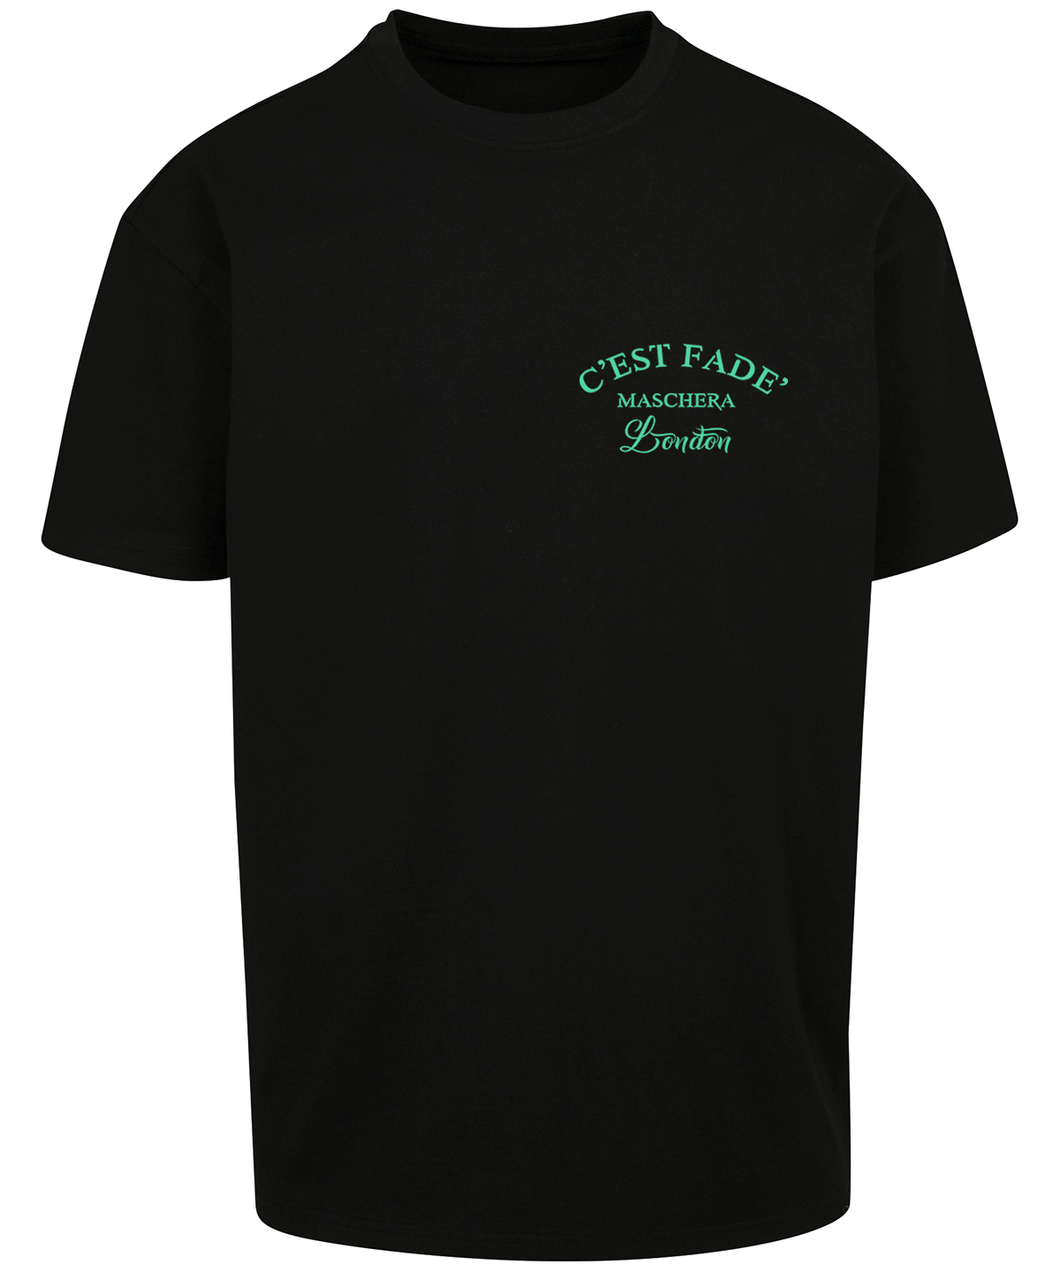 Classic logo print T-shirt - green on black tee